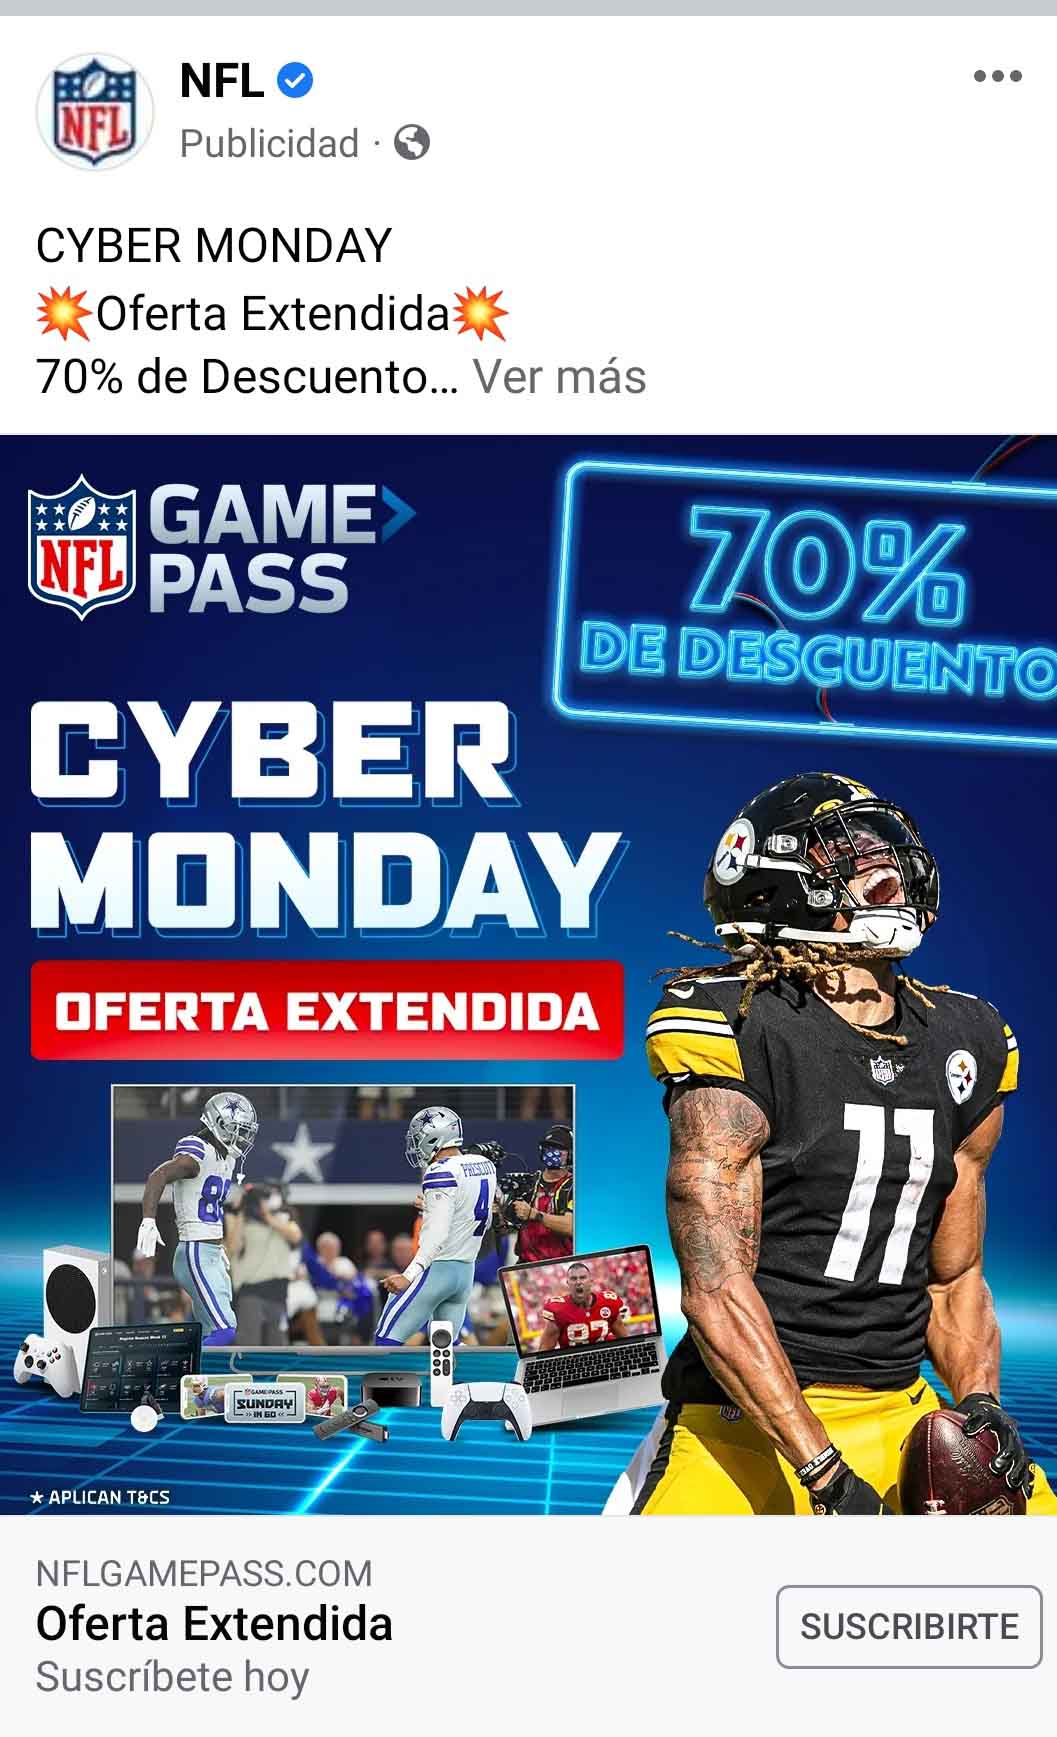 Ejemplo de publicidad en redes sociales de NFL